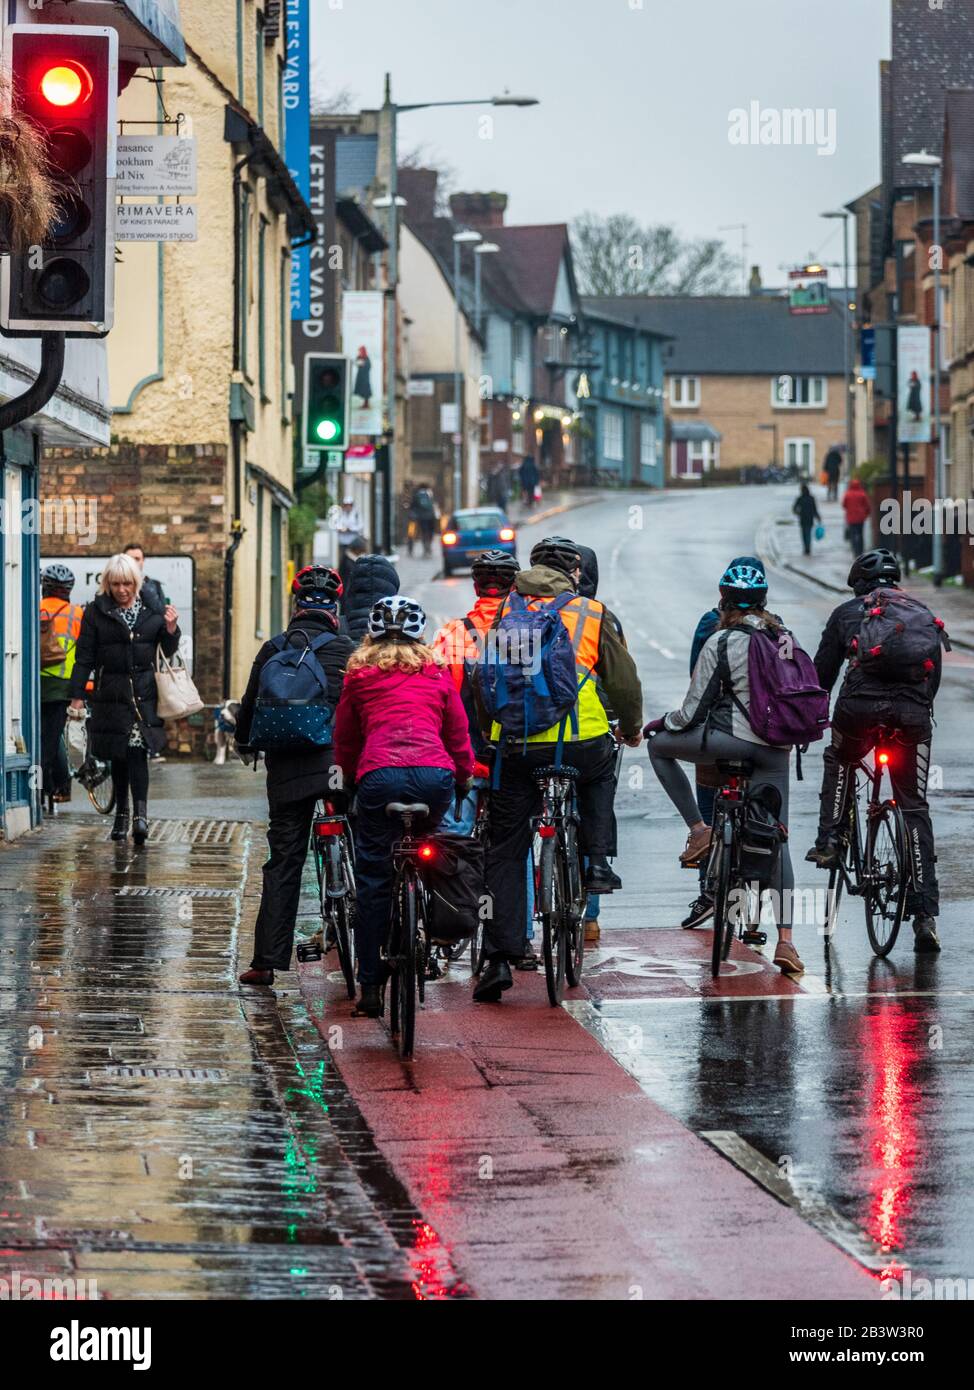 Faire du vélo Aux Navetteurs sous la pluie. Les Cyclistes se font la queue au feu de circulation tôt en soirée à Cambridge. Cyclistes dans la pluie. Banque D'Images